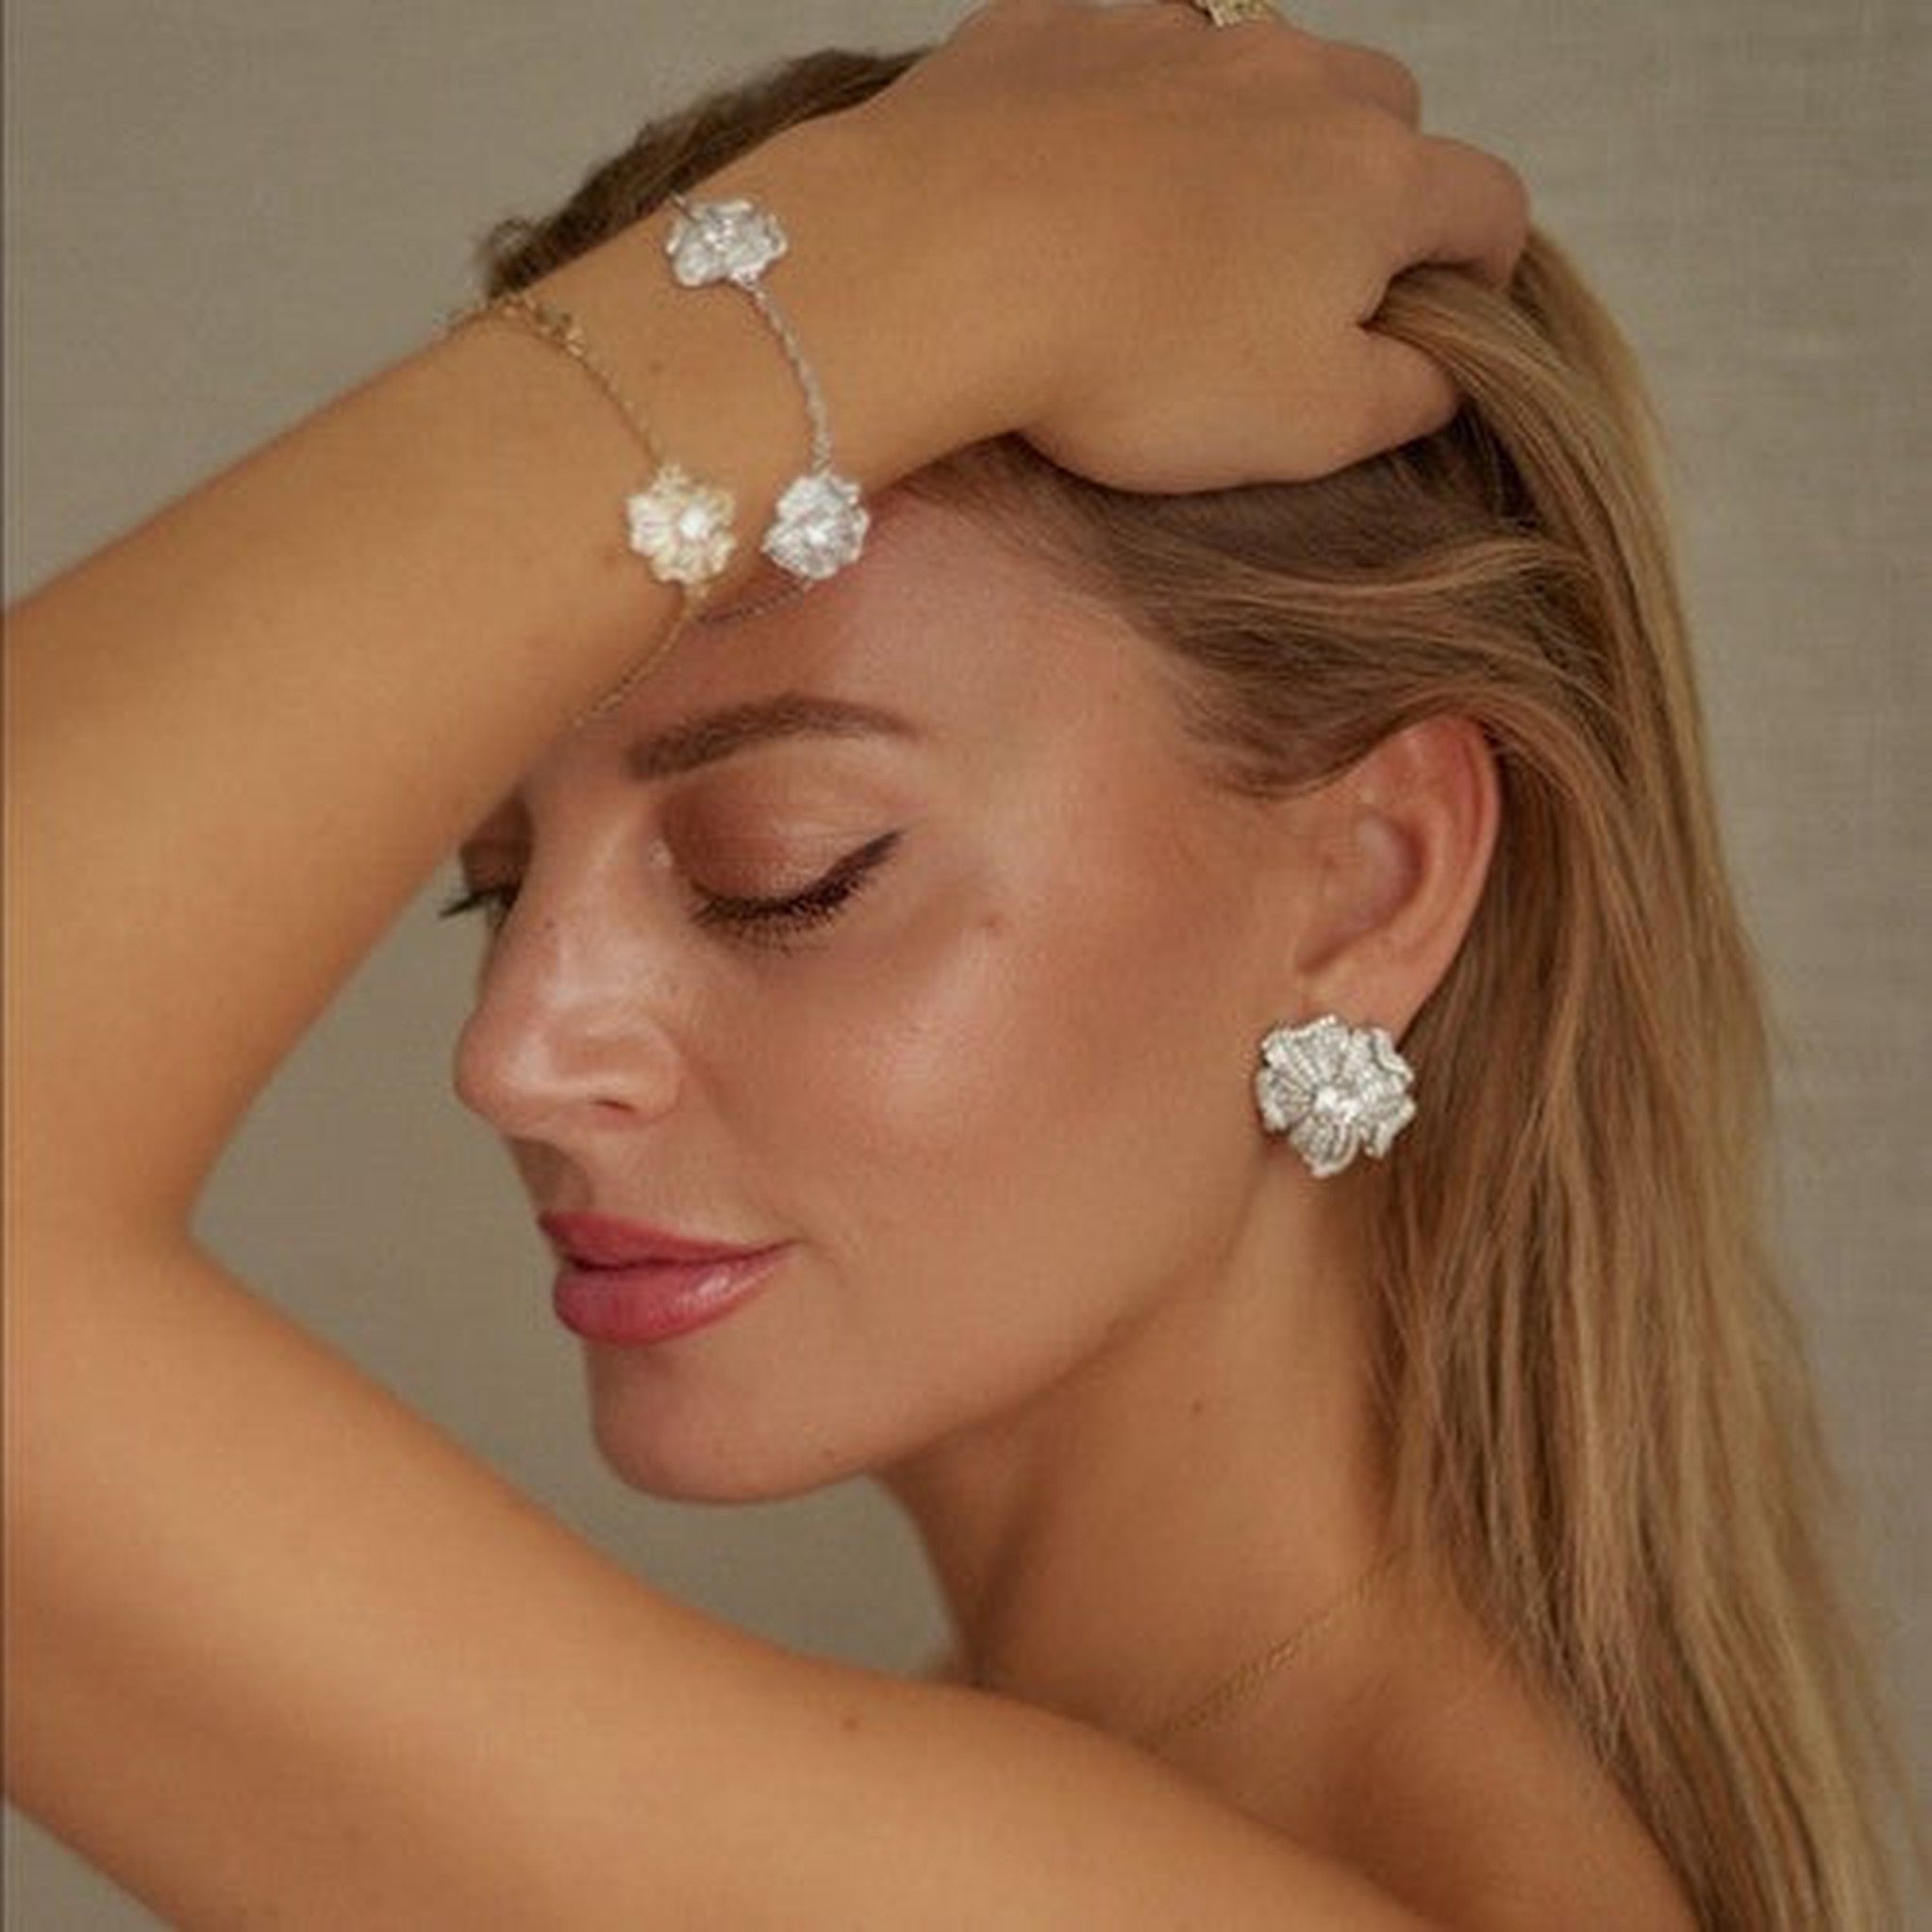 The Silver In Bloom Earrings